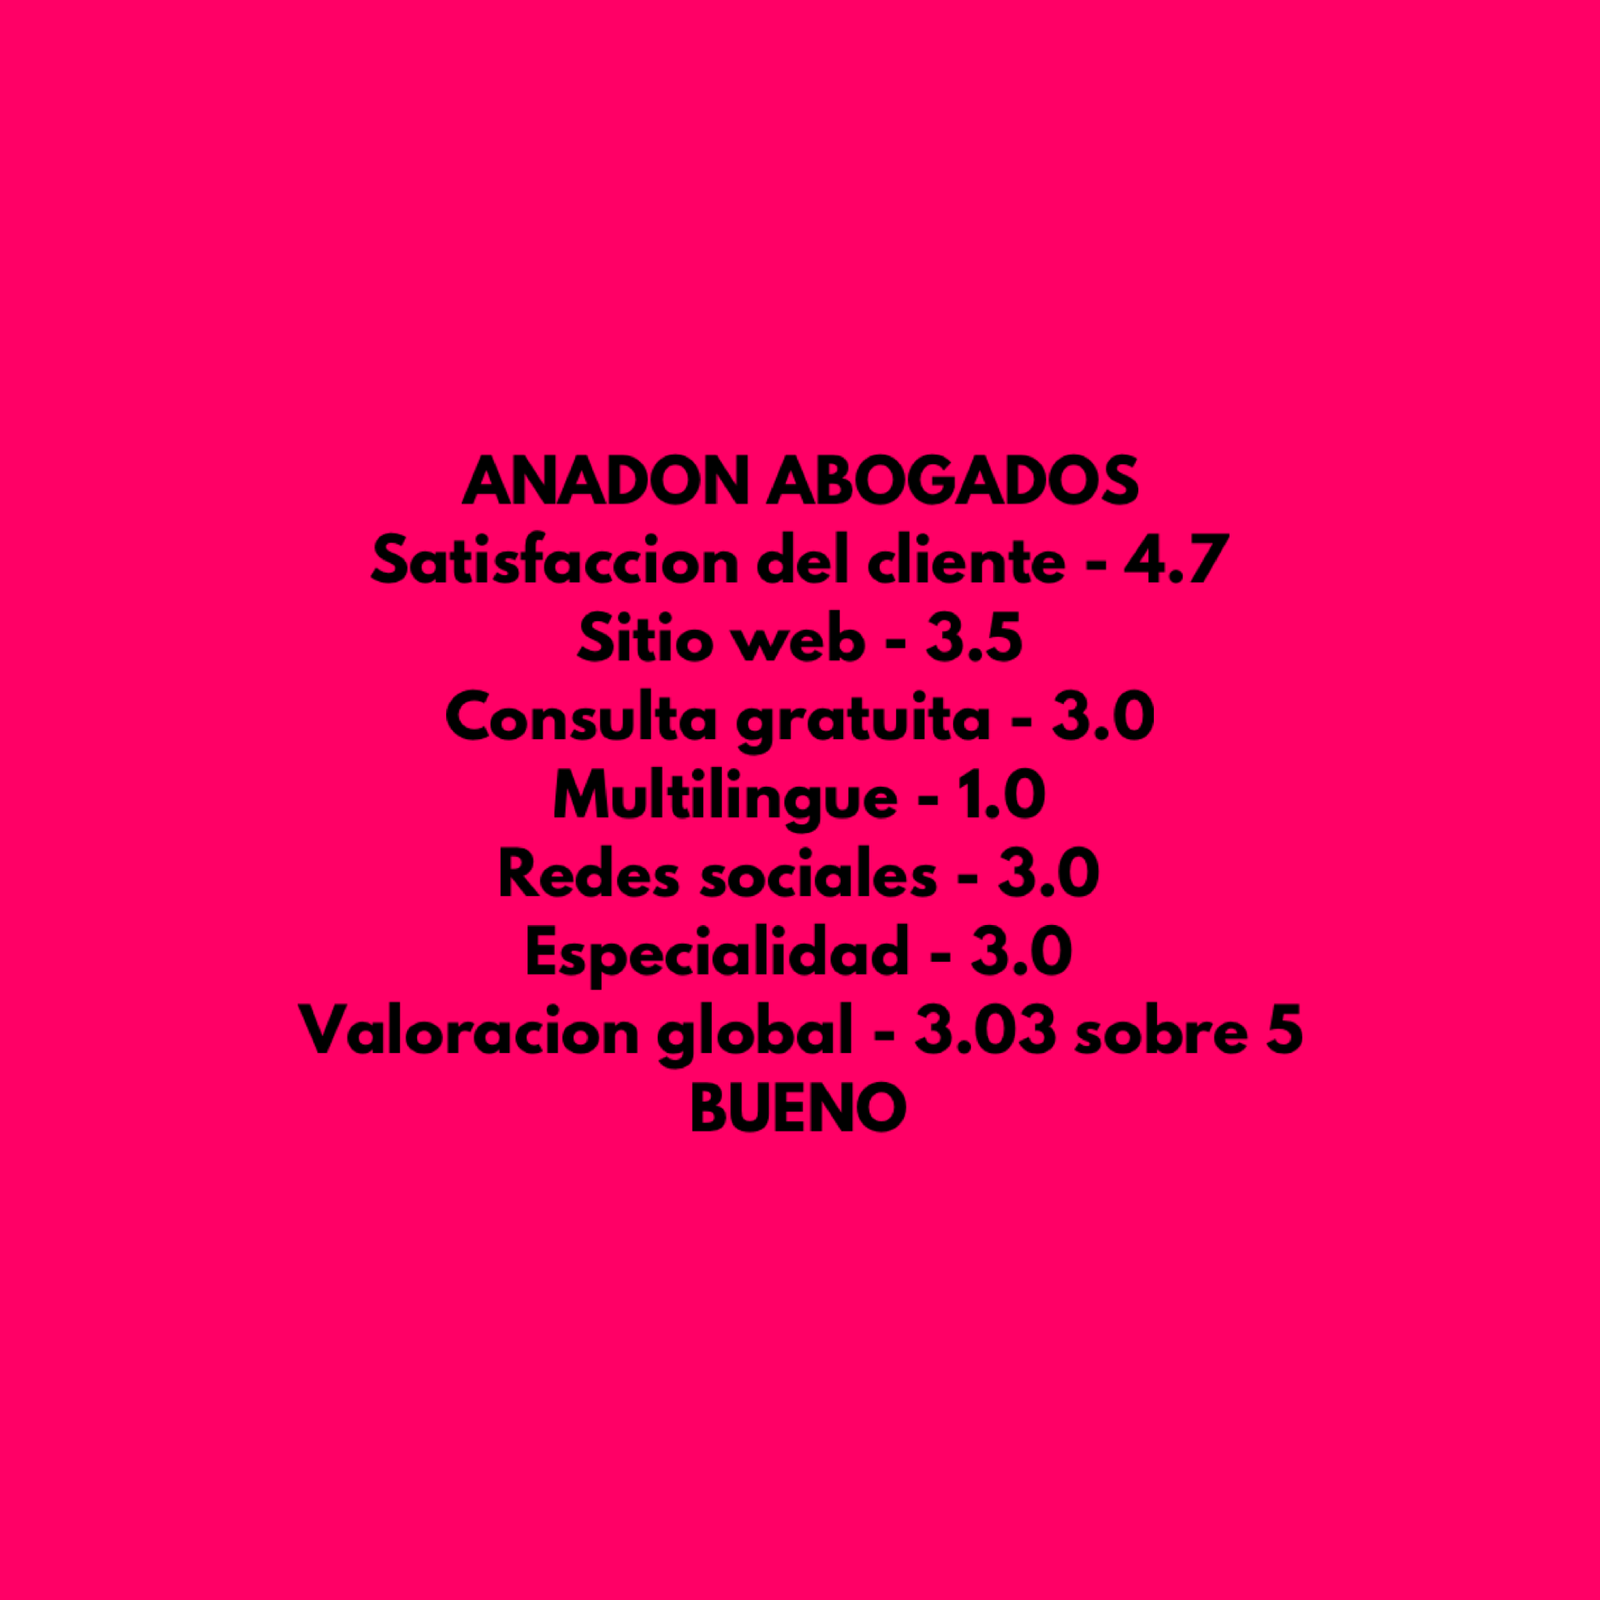 Anadon Abogados